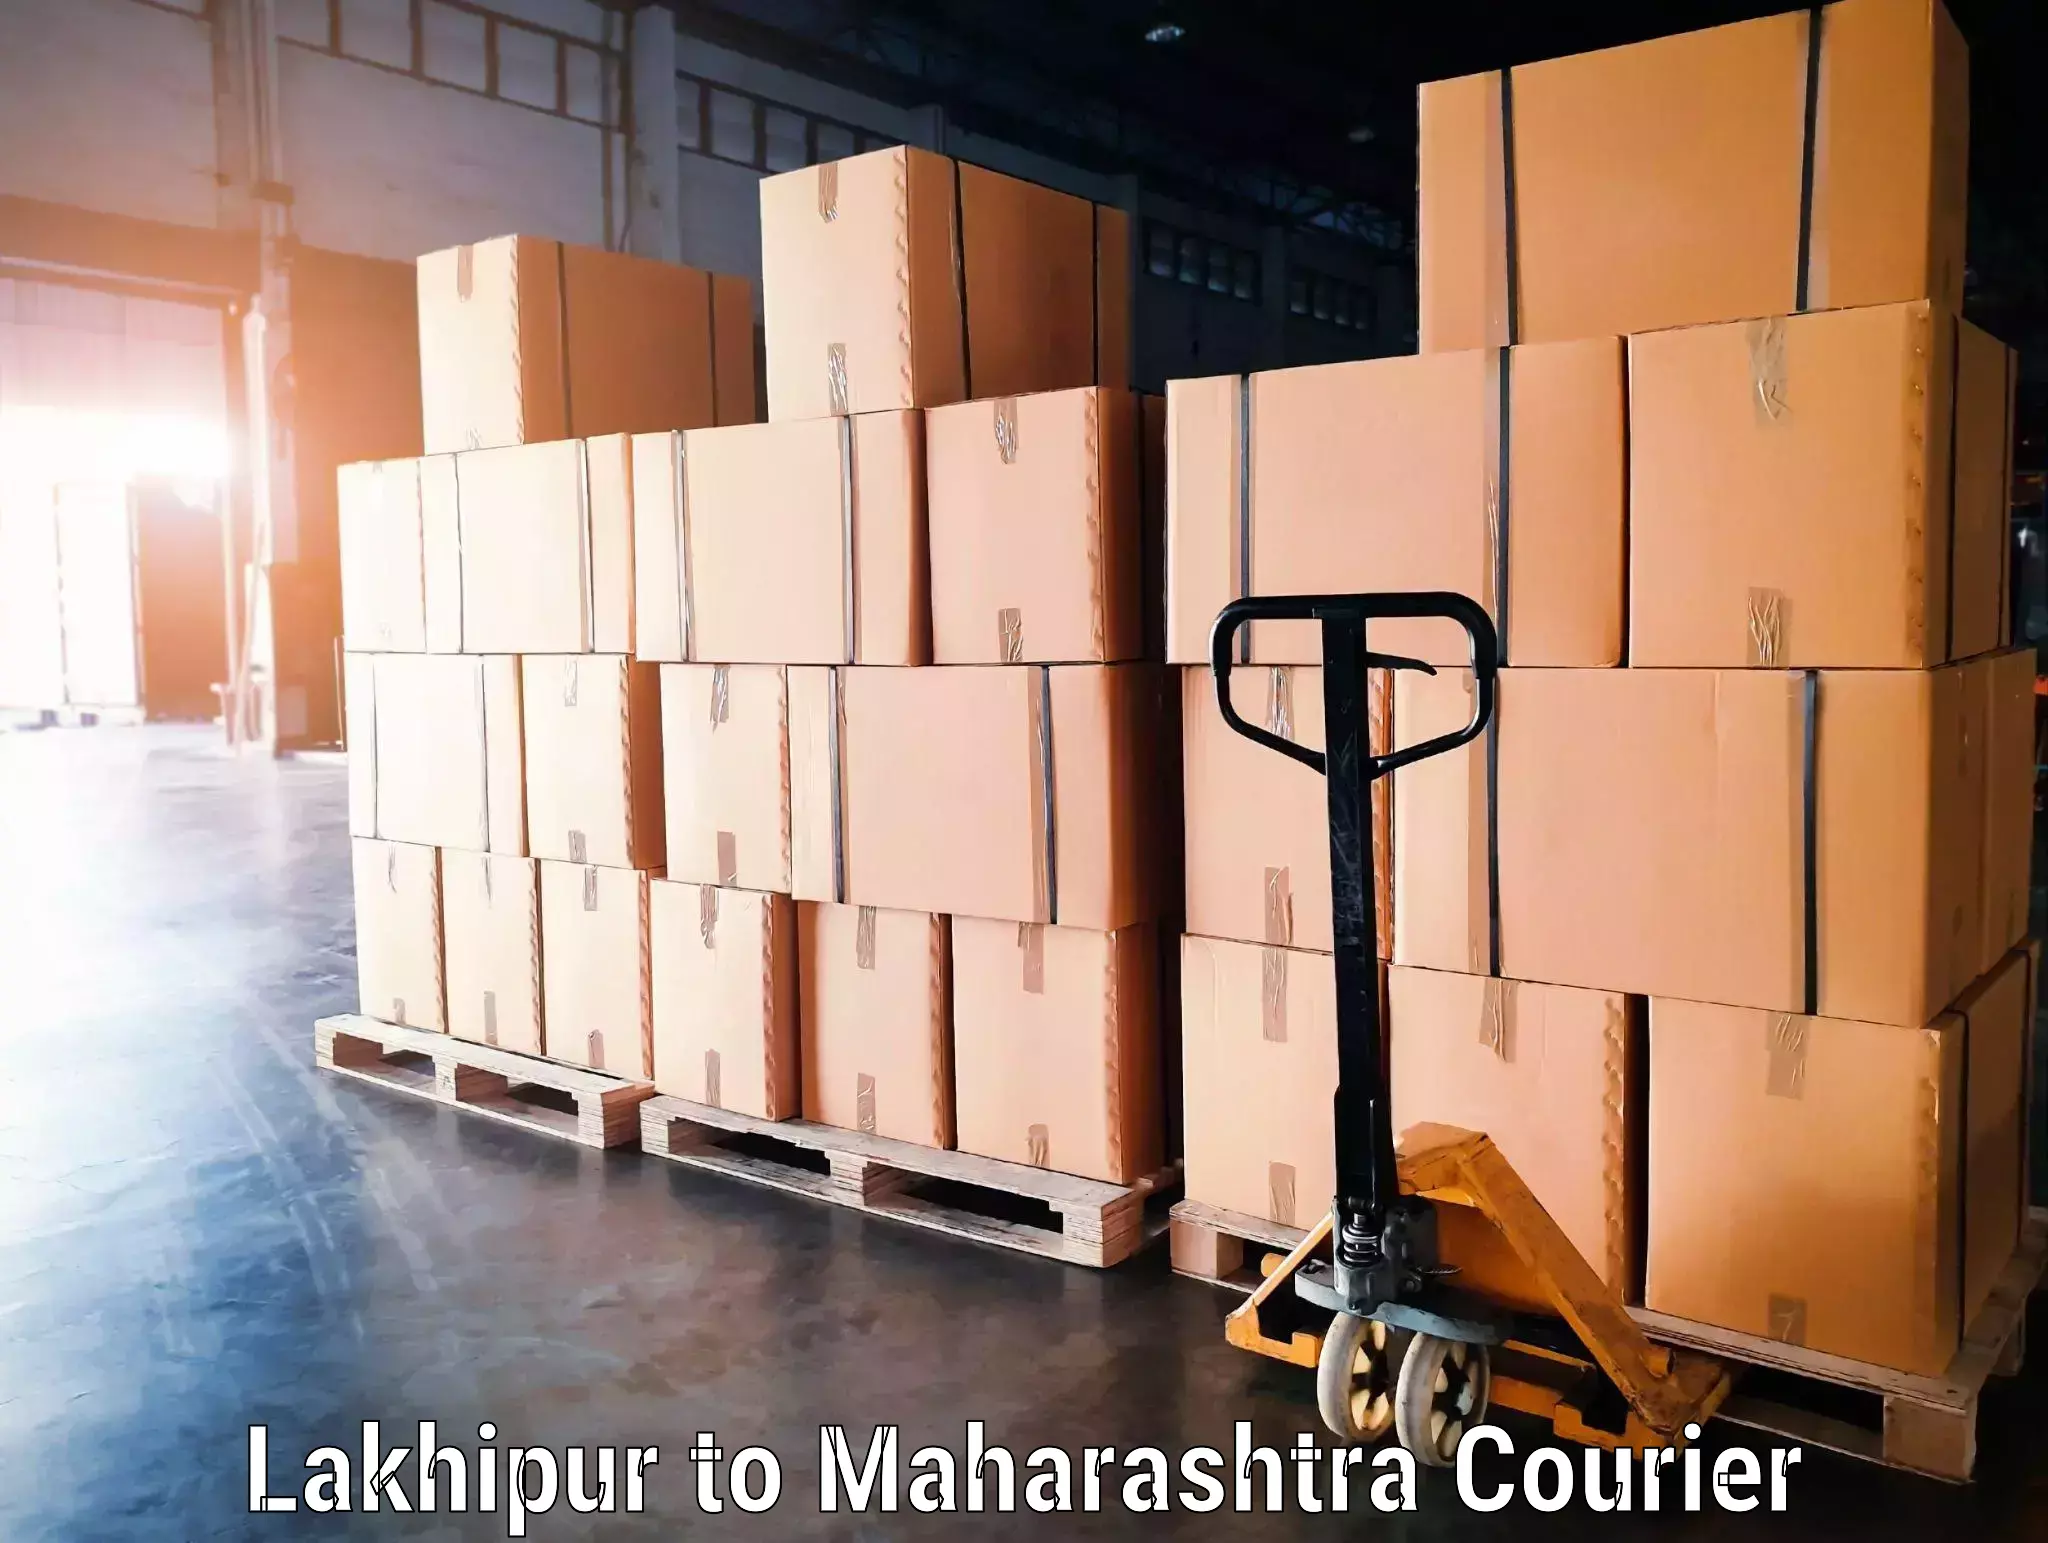 Luggage transport consulting Lakhipur to Ratnagiri